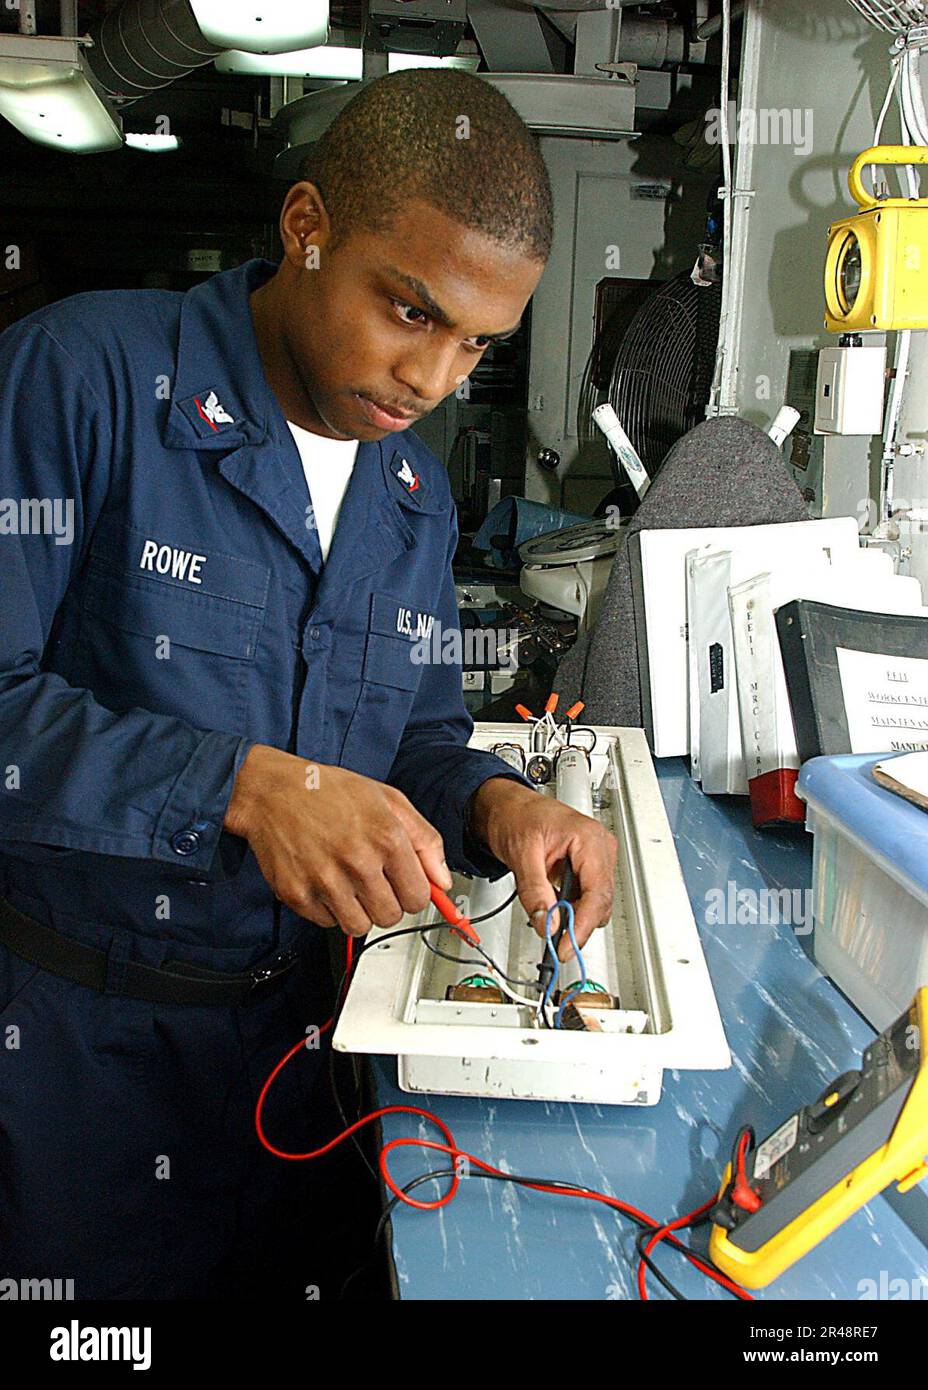 US Navy Electrician's Mate führt Tests in der Batterie- und  Beleuchtungswerkstatt des Schiffs durch Stockfotografie - Alamy